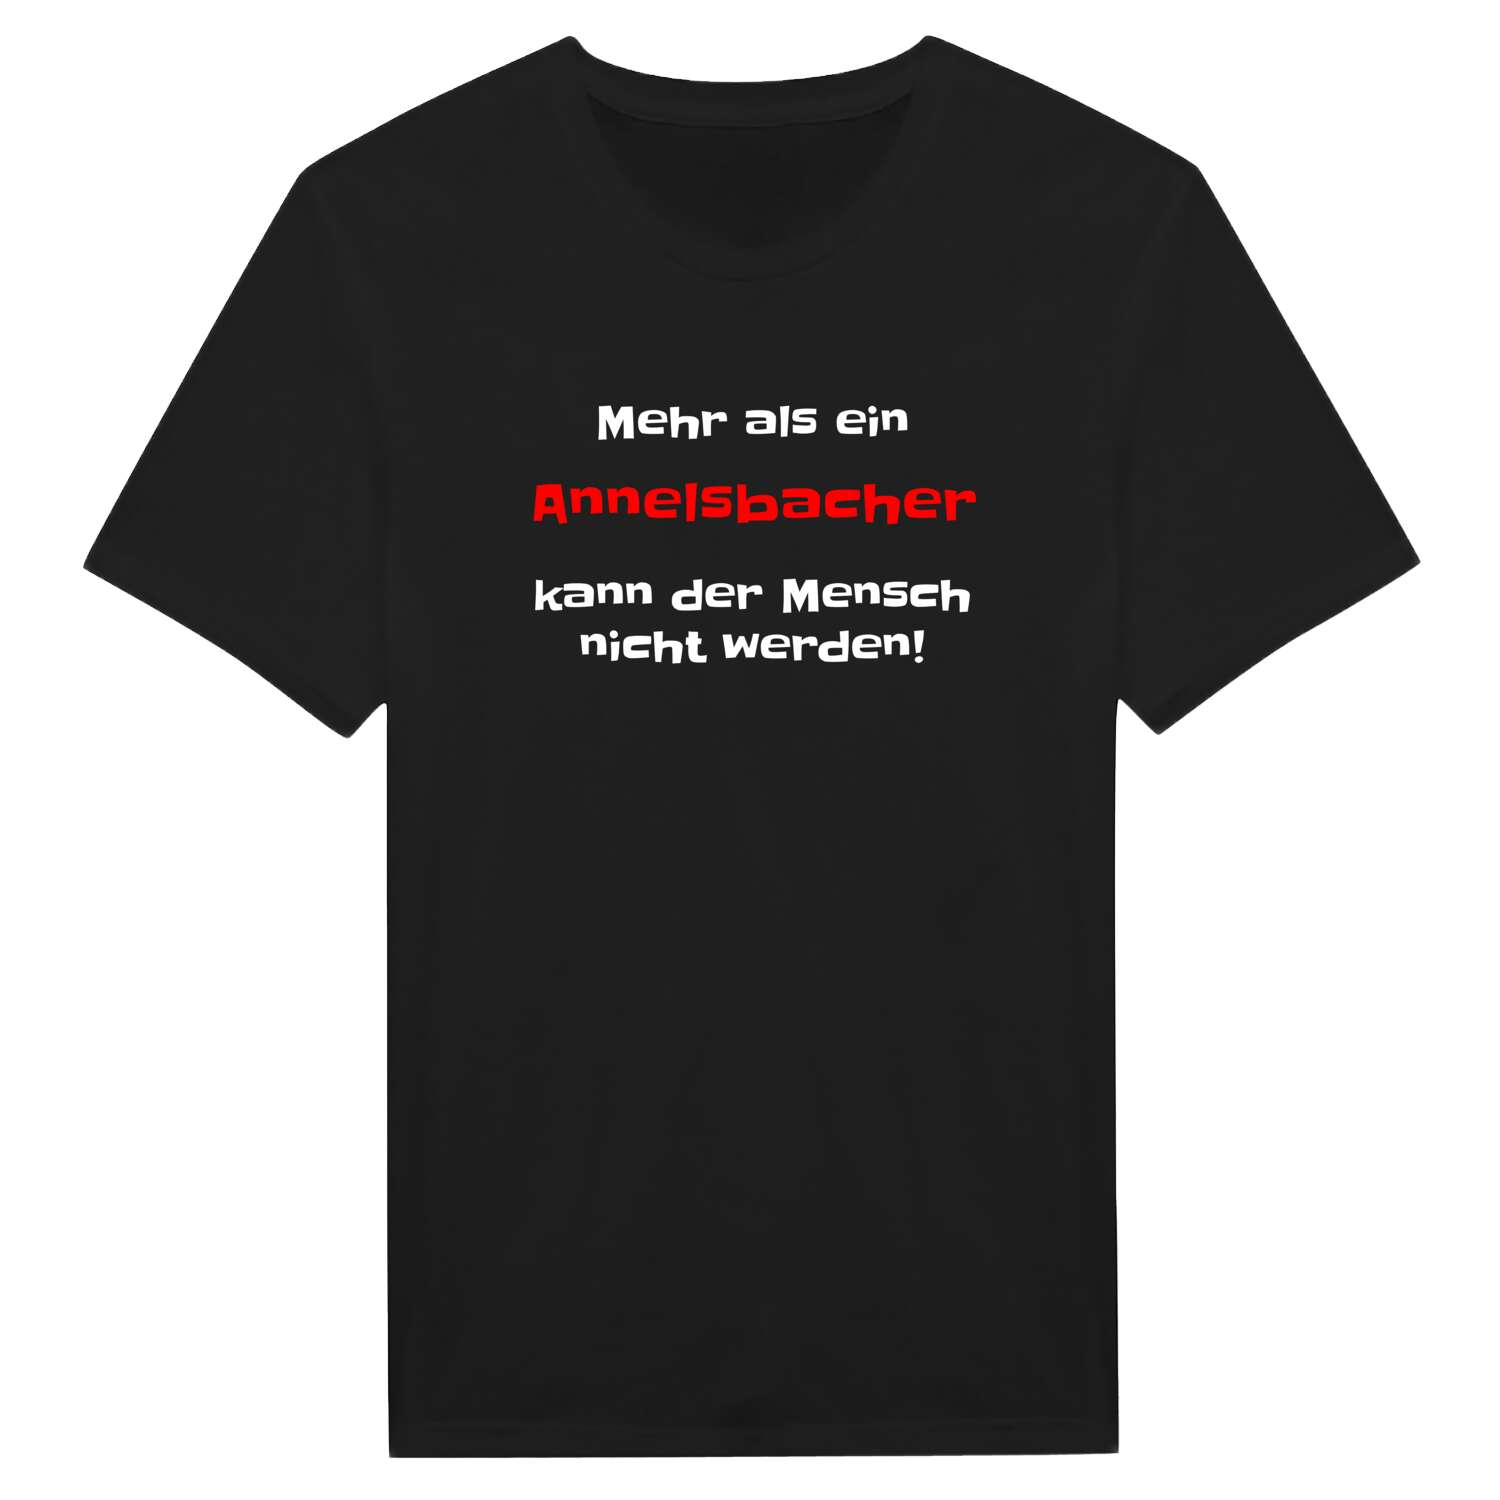 Annelsbach T-Shirt »Mehr als ein«